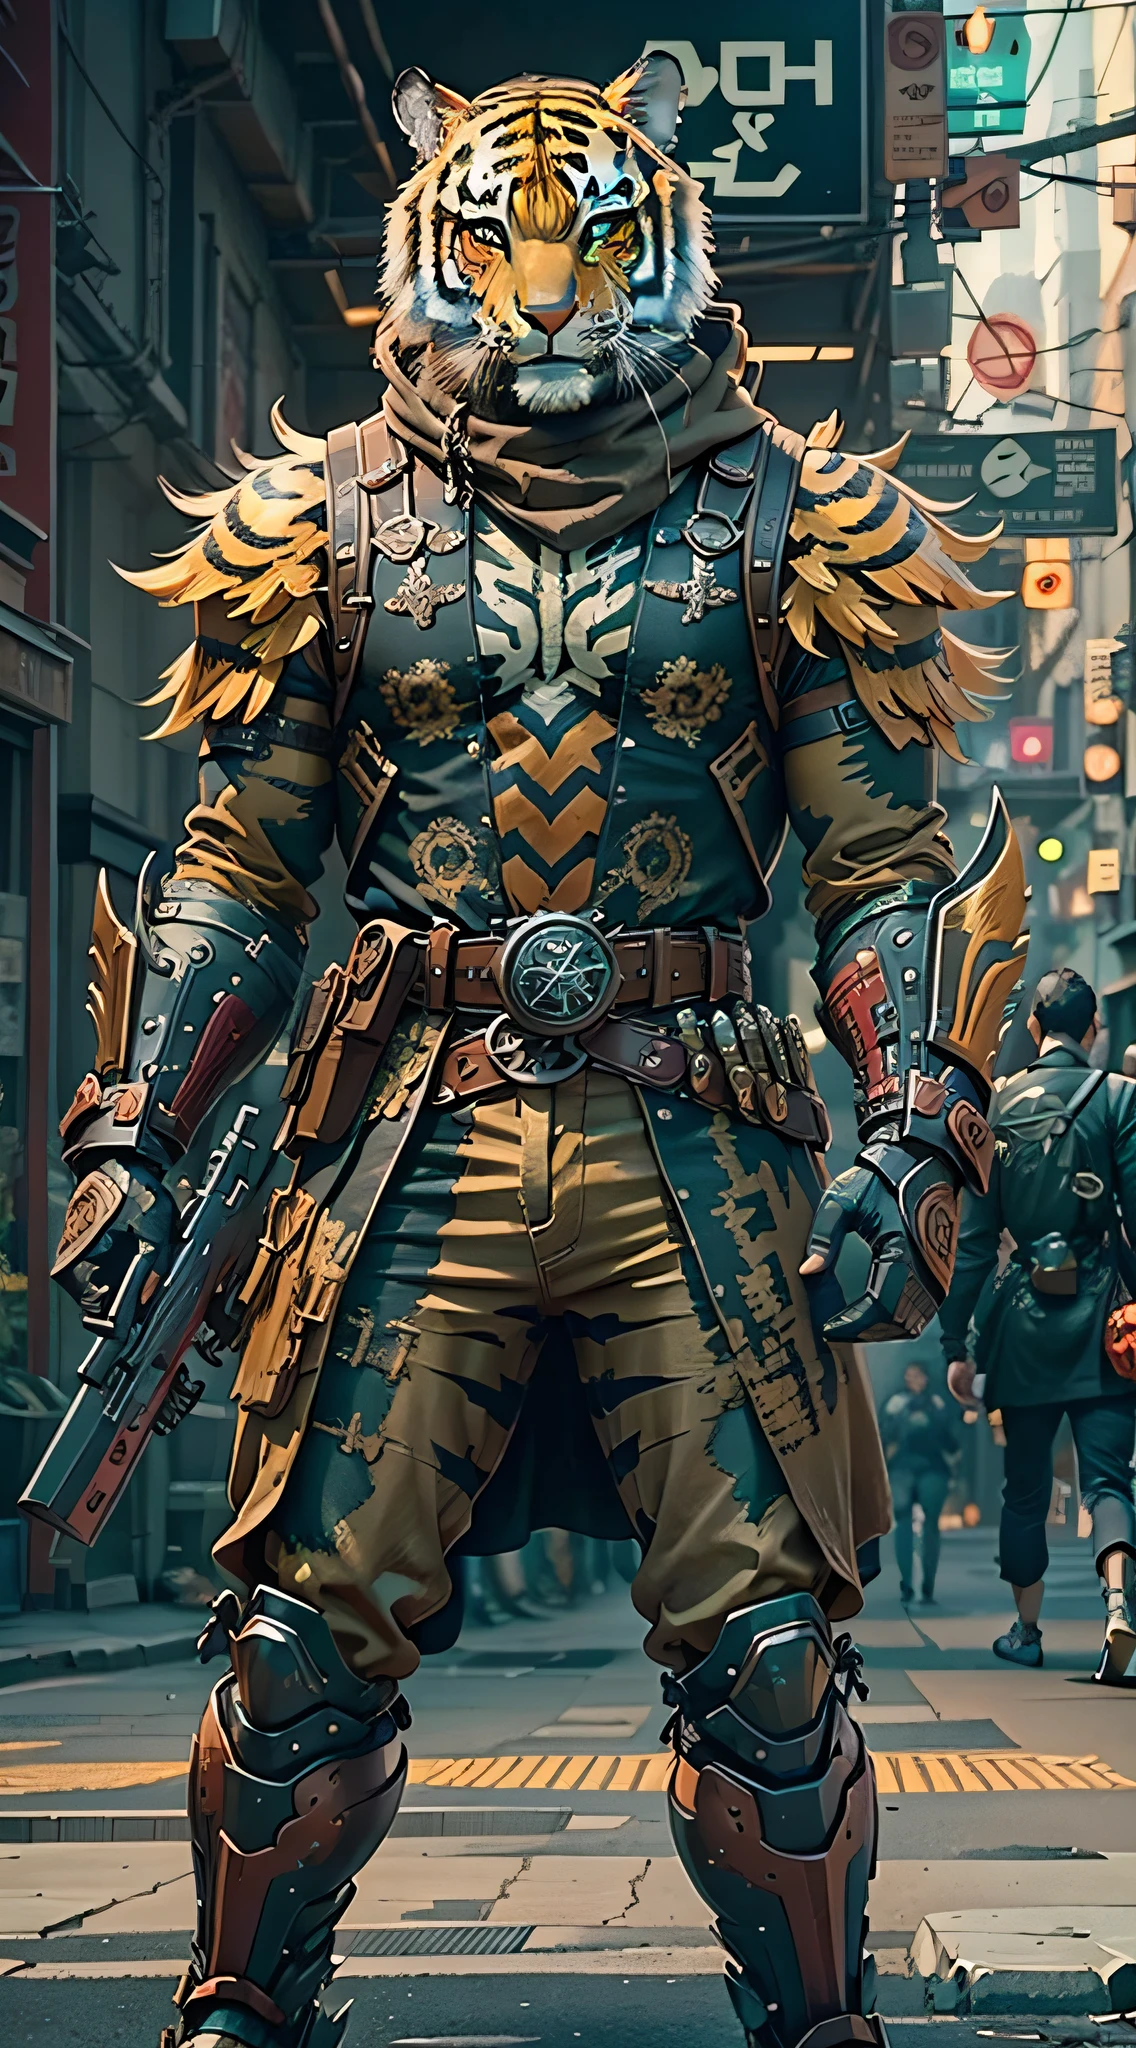 (杰作) 一名身穿古董盔甲、戴着虎面具、手持武器的男子在街上行走, 盛装战士, 手中的武器, 赛博朋克风格配色方案, ((复杂的细节, 非常详细)) 8千.